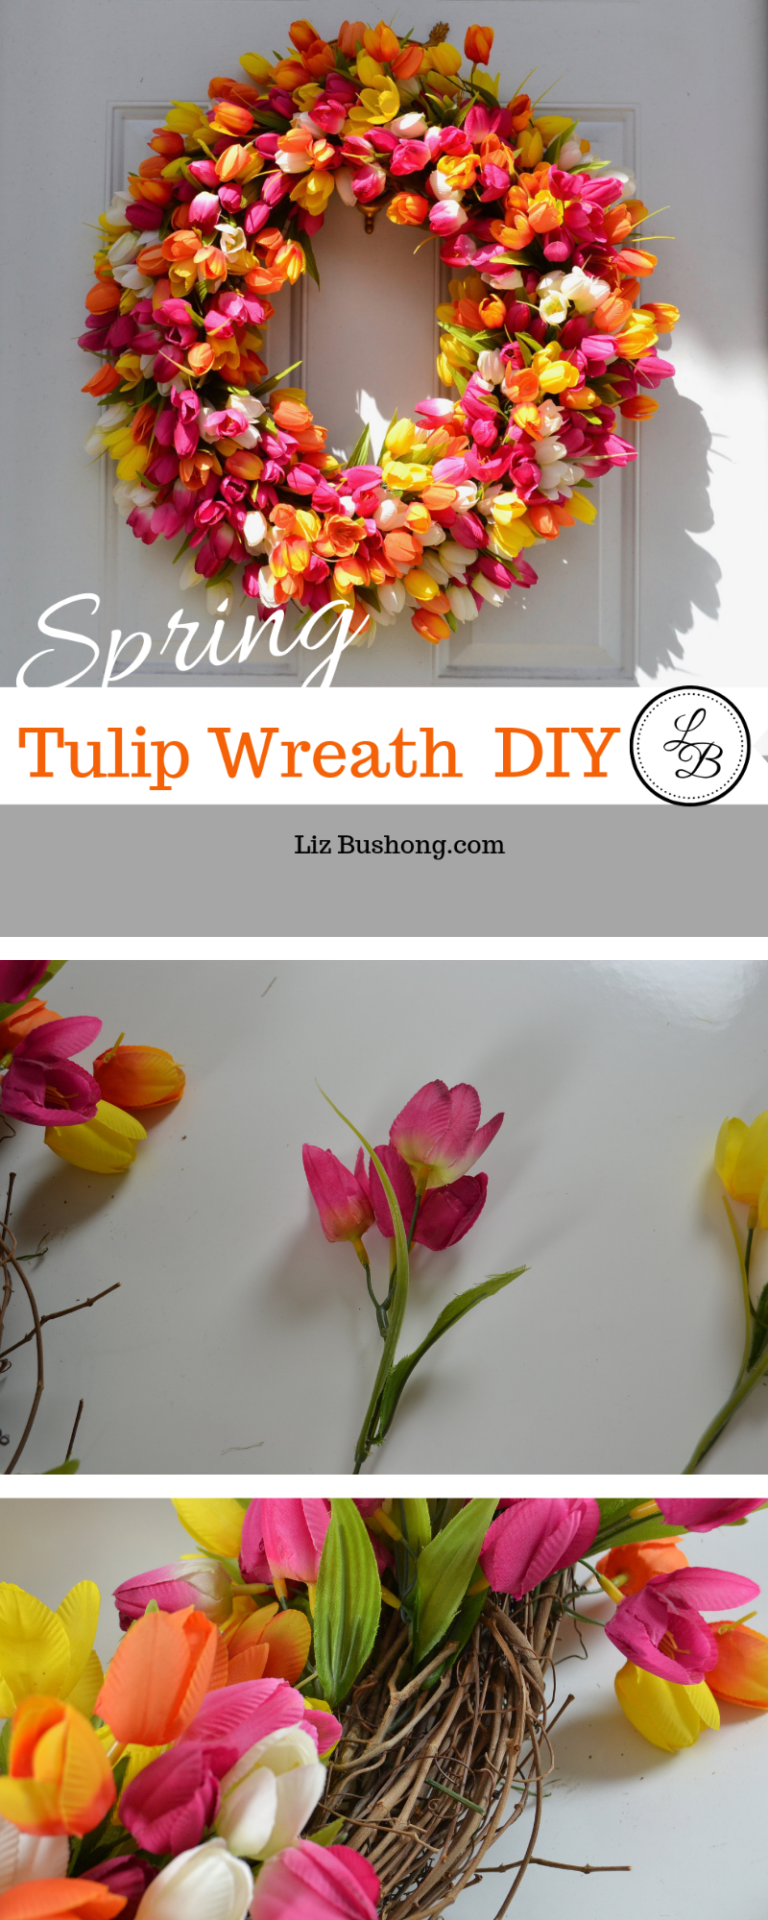 How to Make Spring Tulip Wreath lizbushong.com